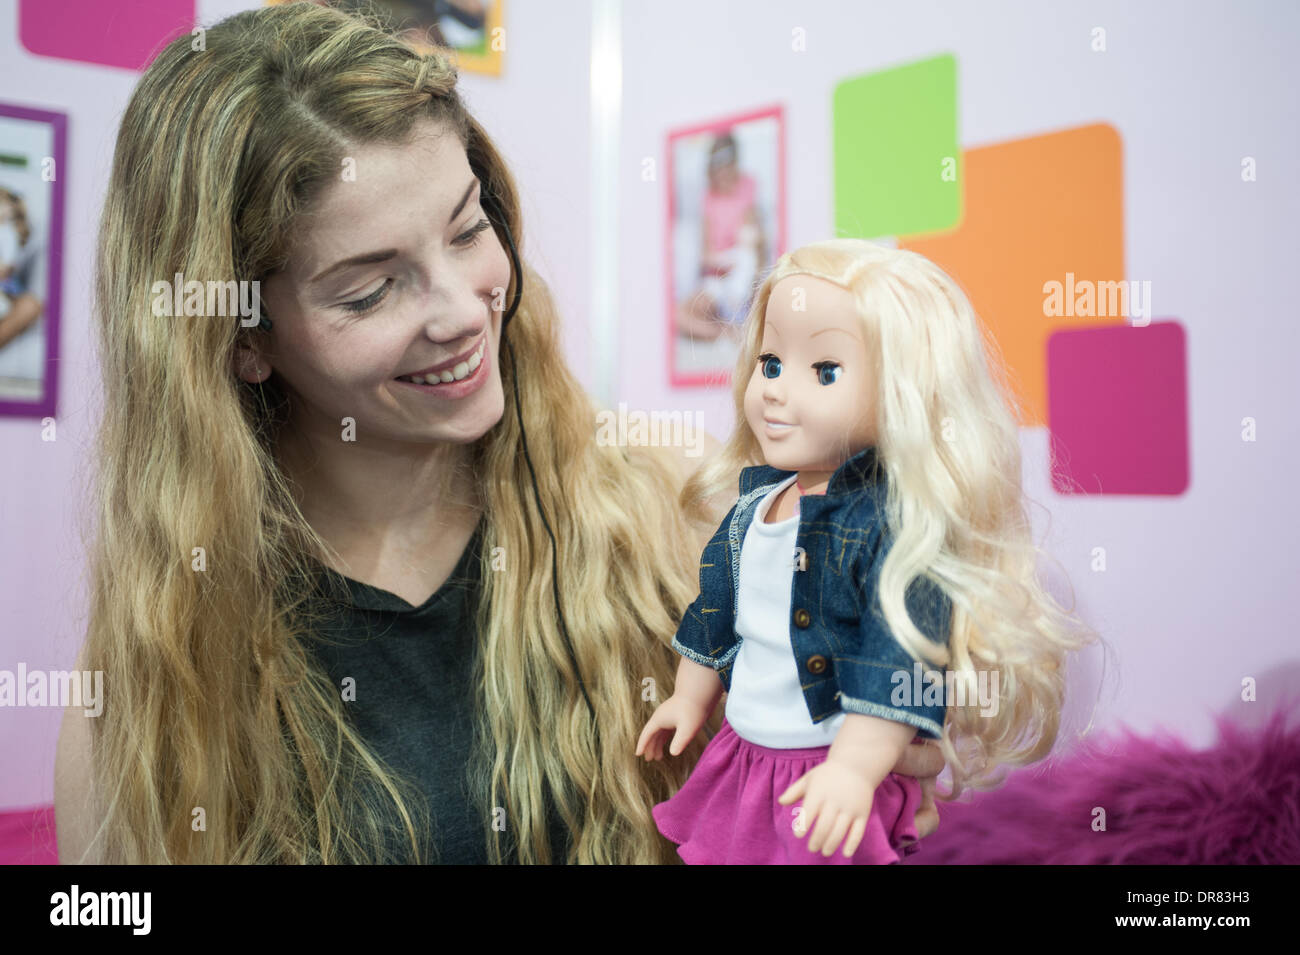 London, UK - 21. Januar 2014: Daisy Tonge hält mein Freund Cayla durch lebendiges Spielzeug-Gruppe, weltweit erste internetfähige Puppe während der Toy Fair 2014 in Kensington Olympia. Bildnachweis: Piero Cruciatti/Alamy Live-Nachrichten Stockfoto